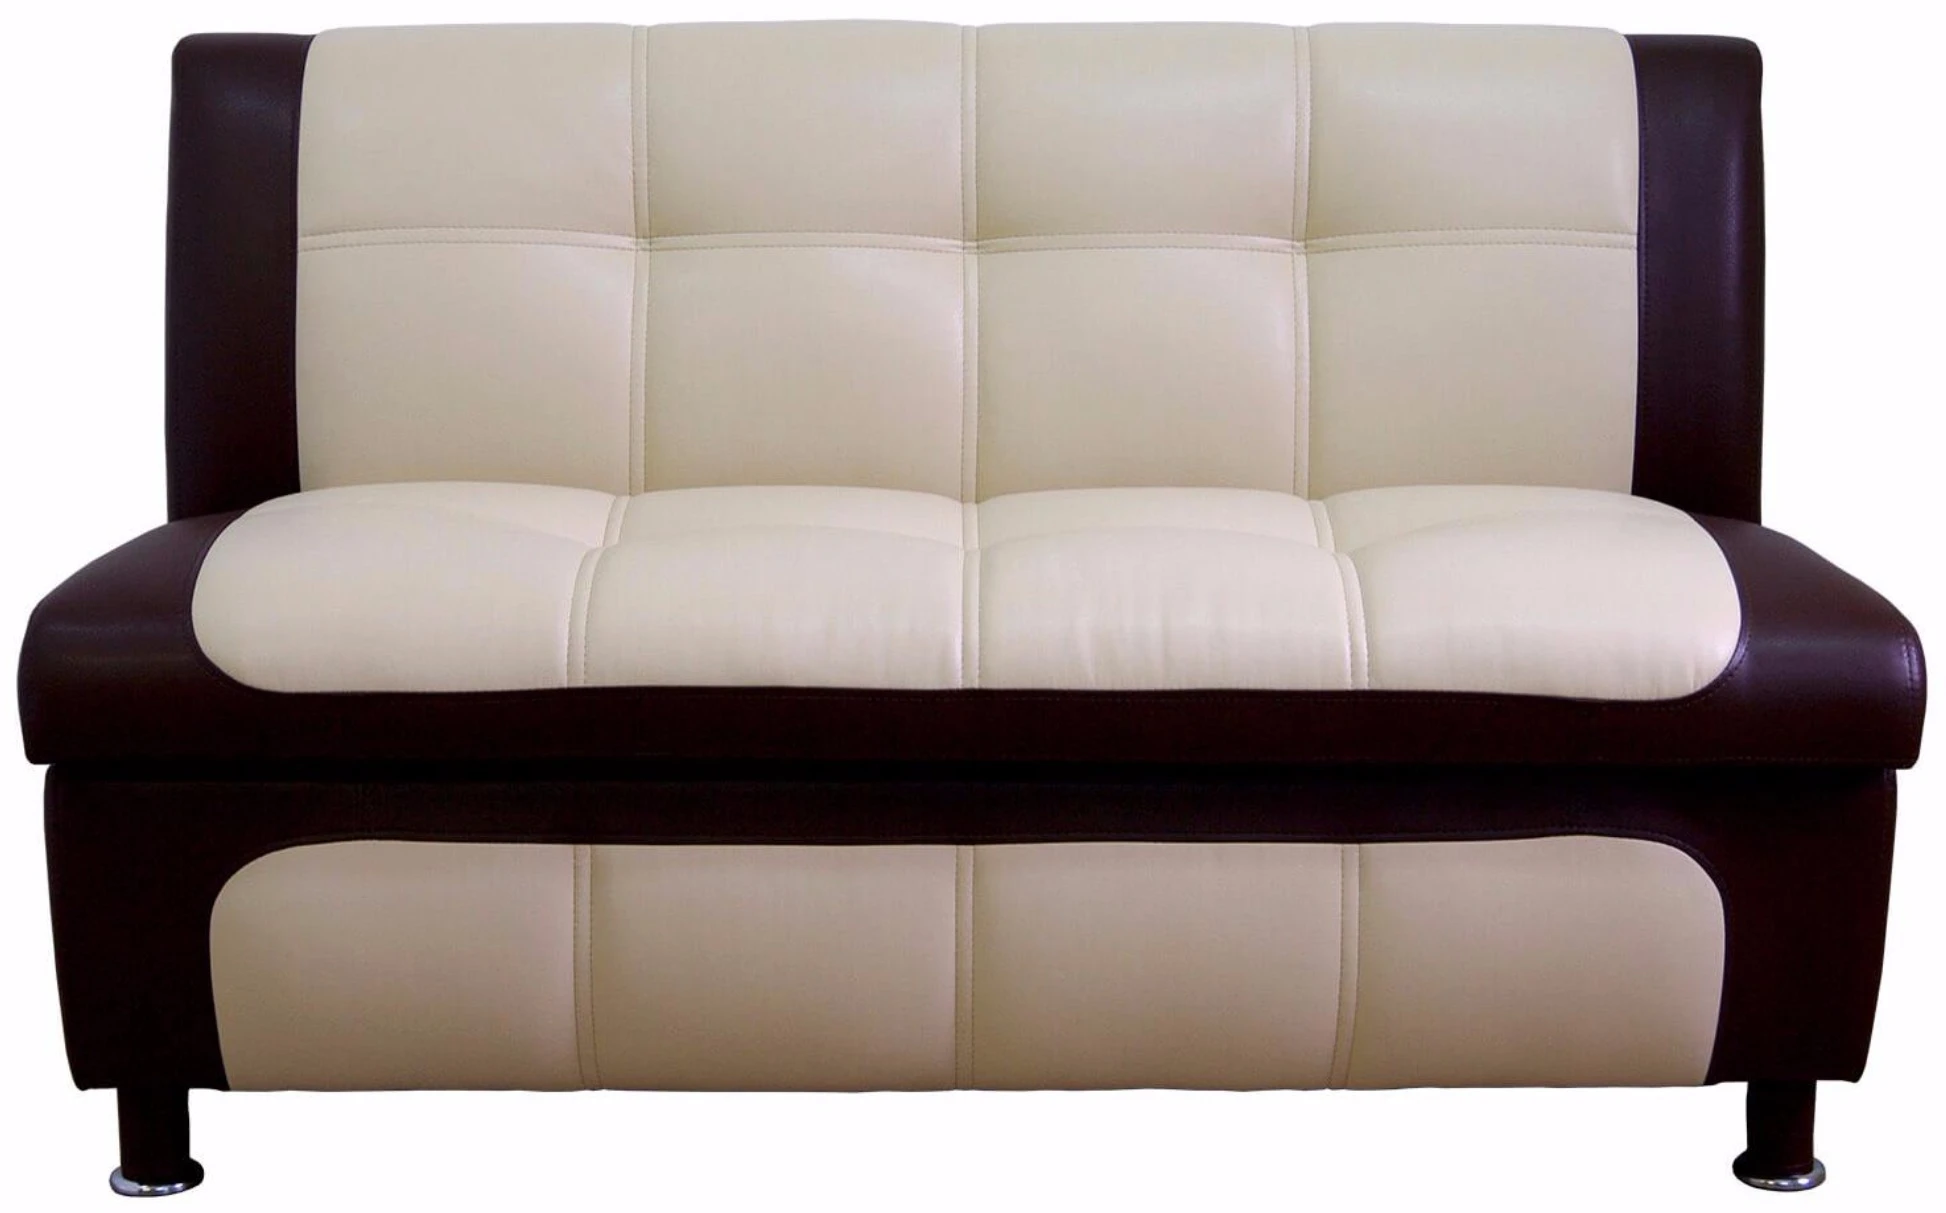 диван для сидения без спального места размер 140